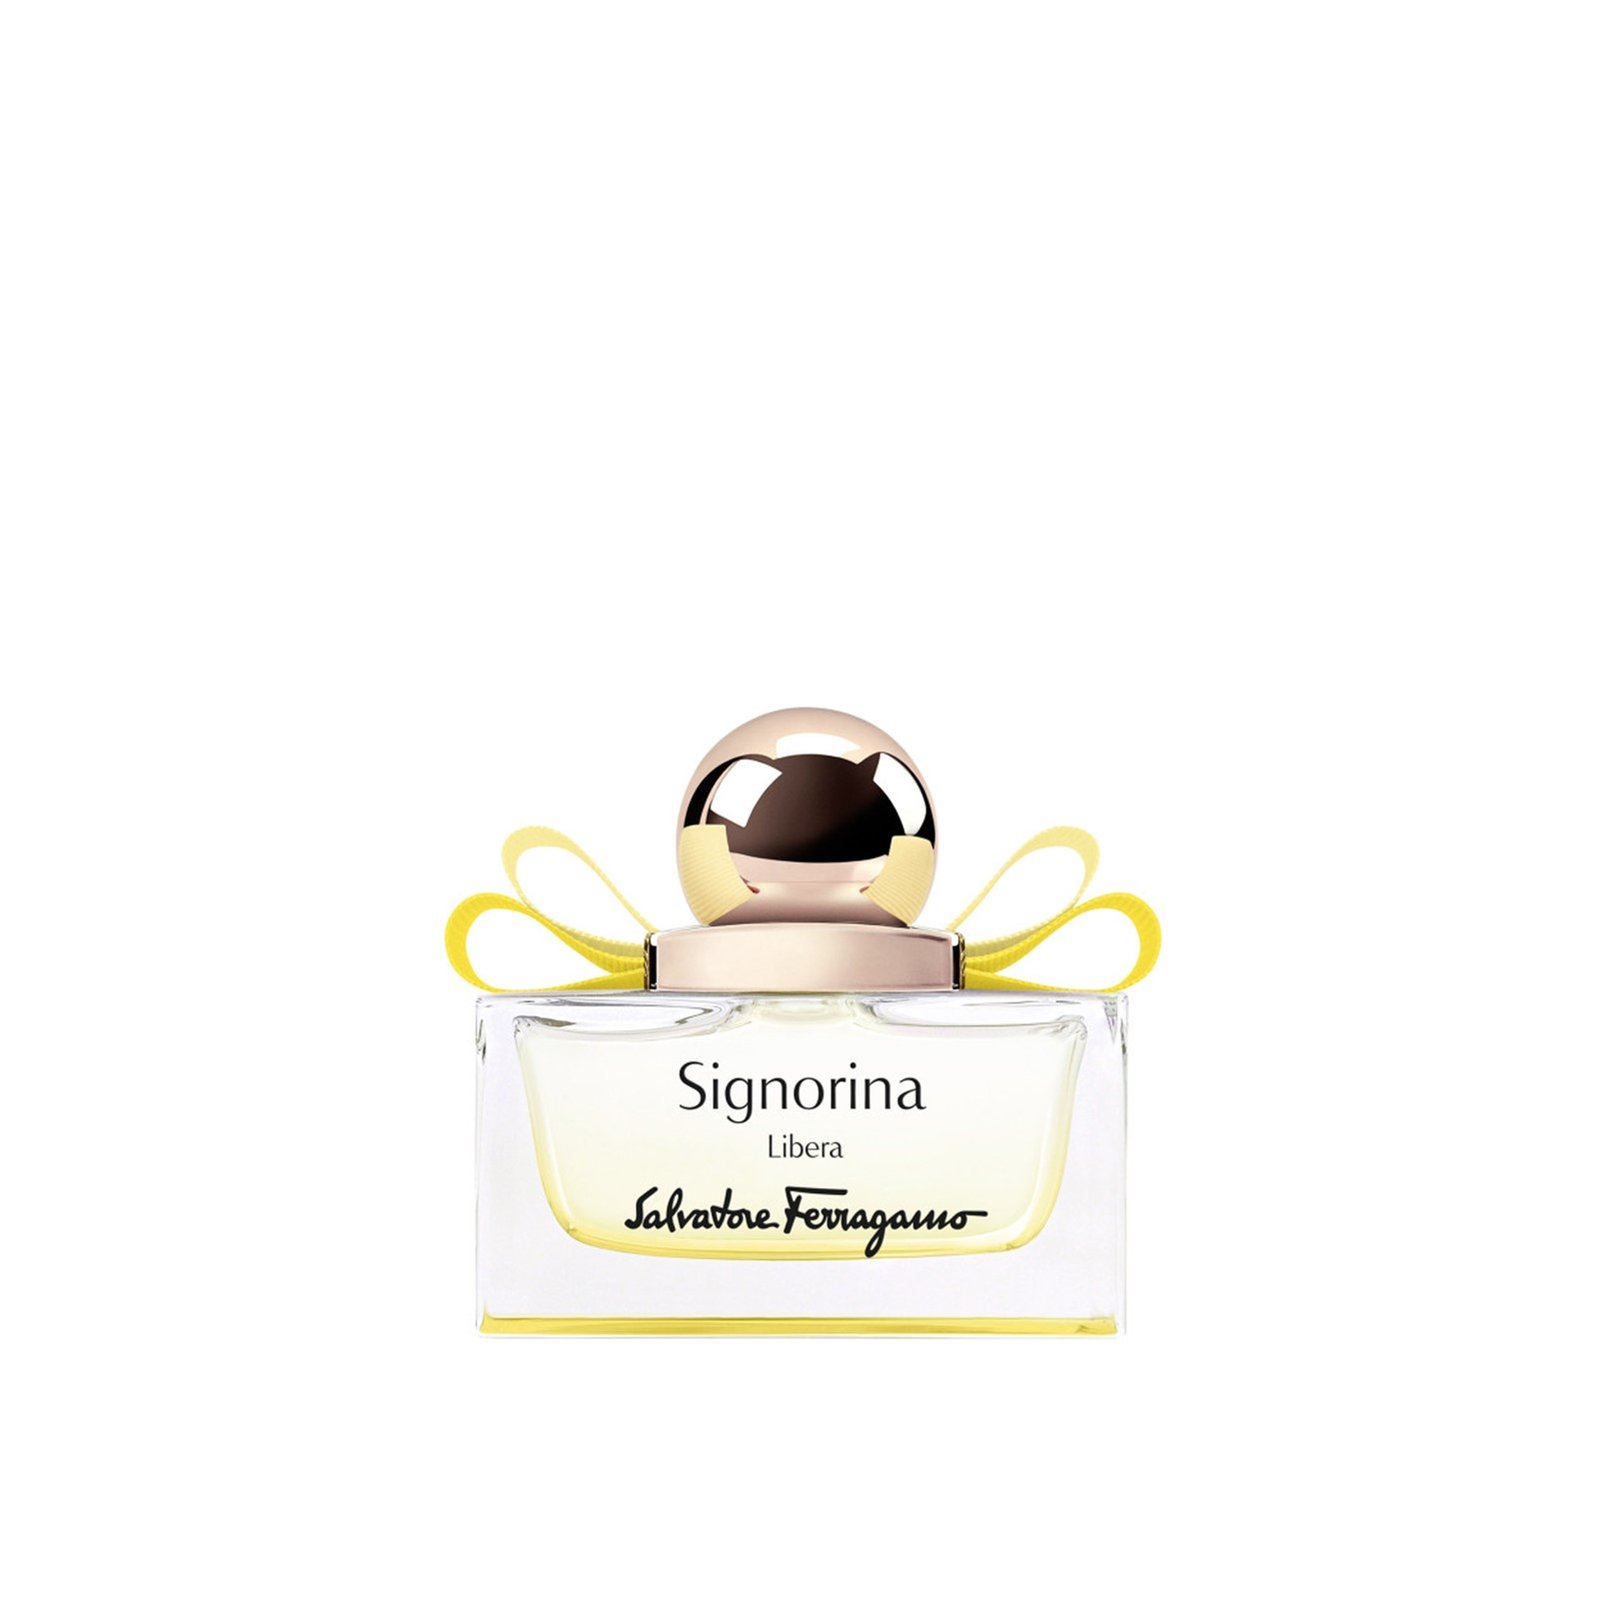 Salvatore Ferragamo Signorina Libera Eau de Parfum 30ml (1.0 fl oz)